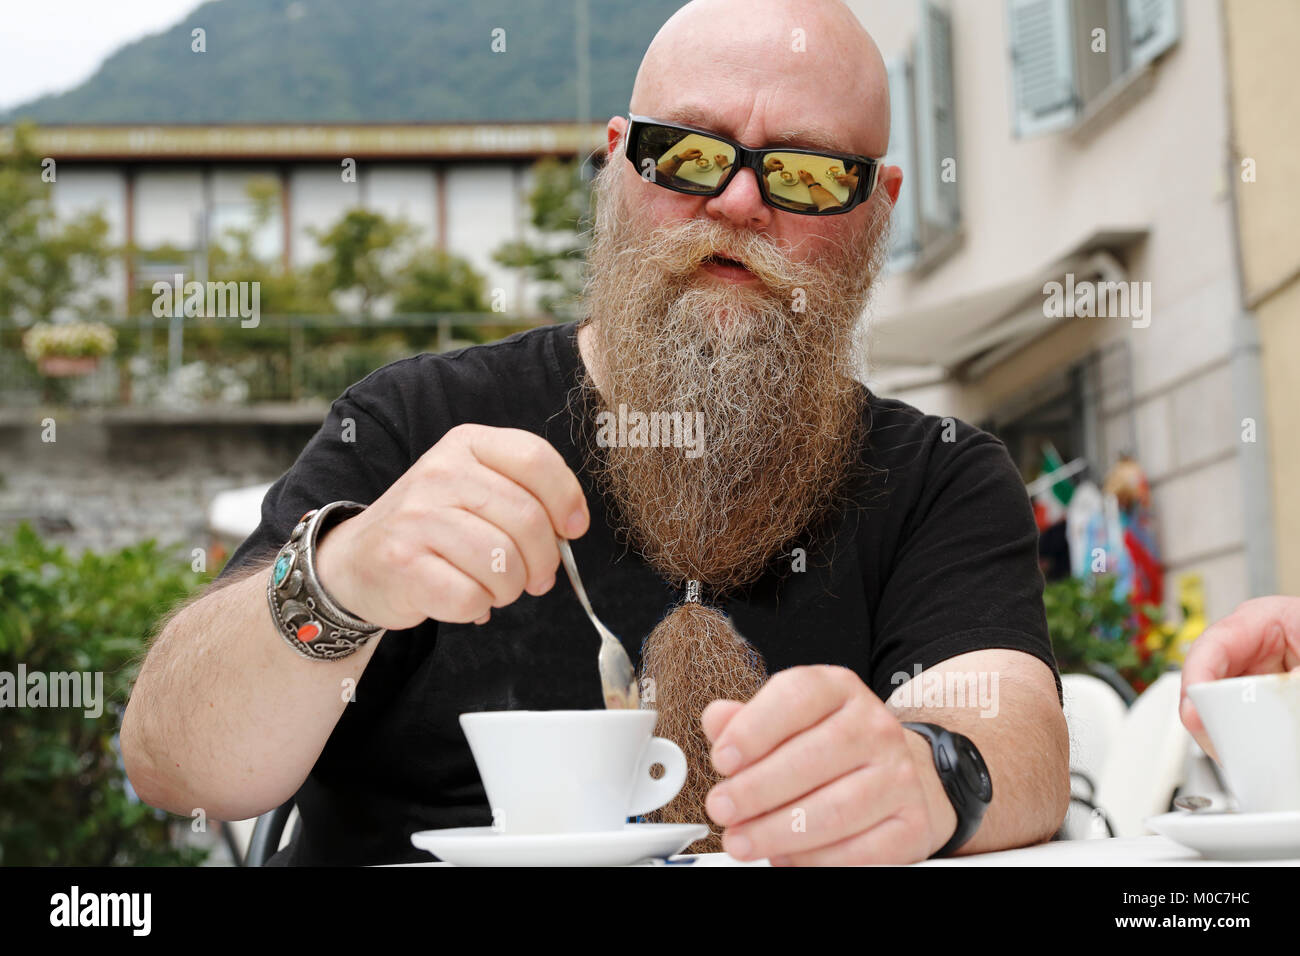 Mann mit langem Bart und Sonnenbrille, genießt eine Tasse Kaffee, Cappuccino Stock Photo